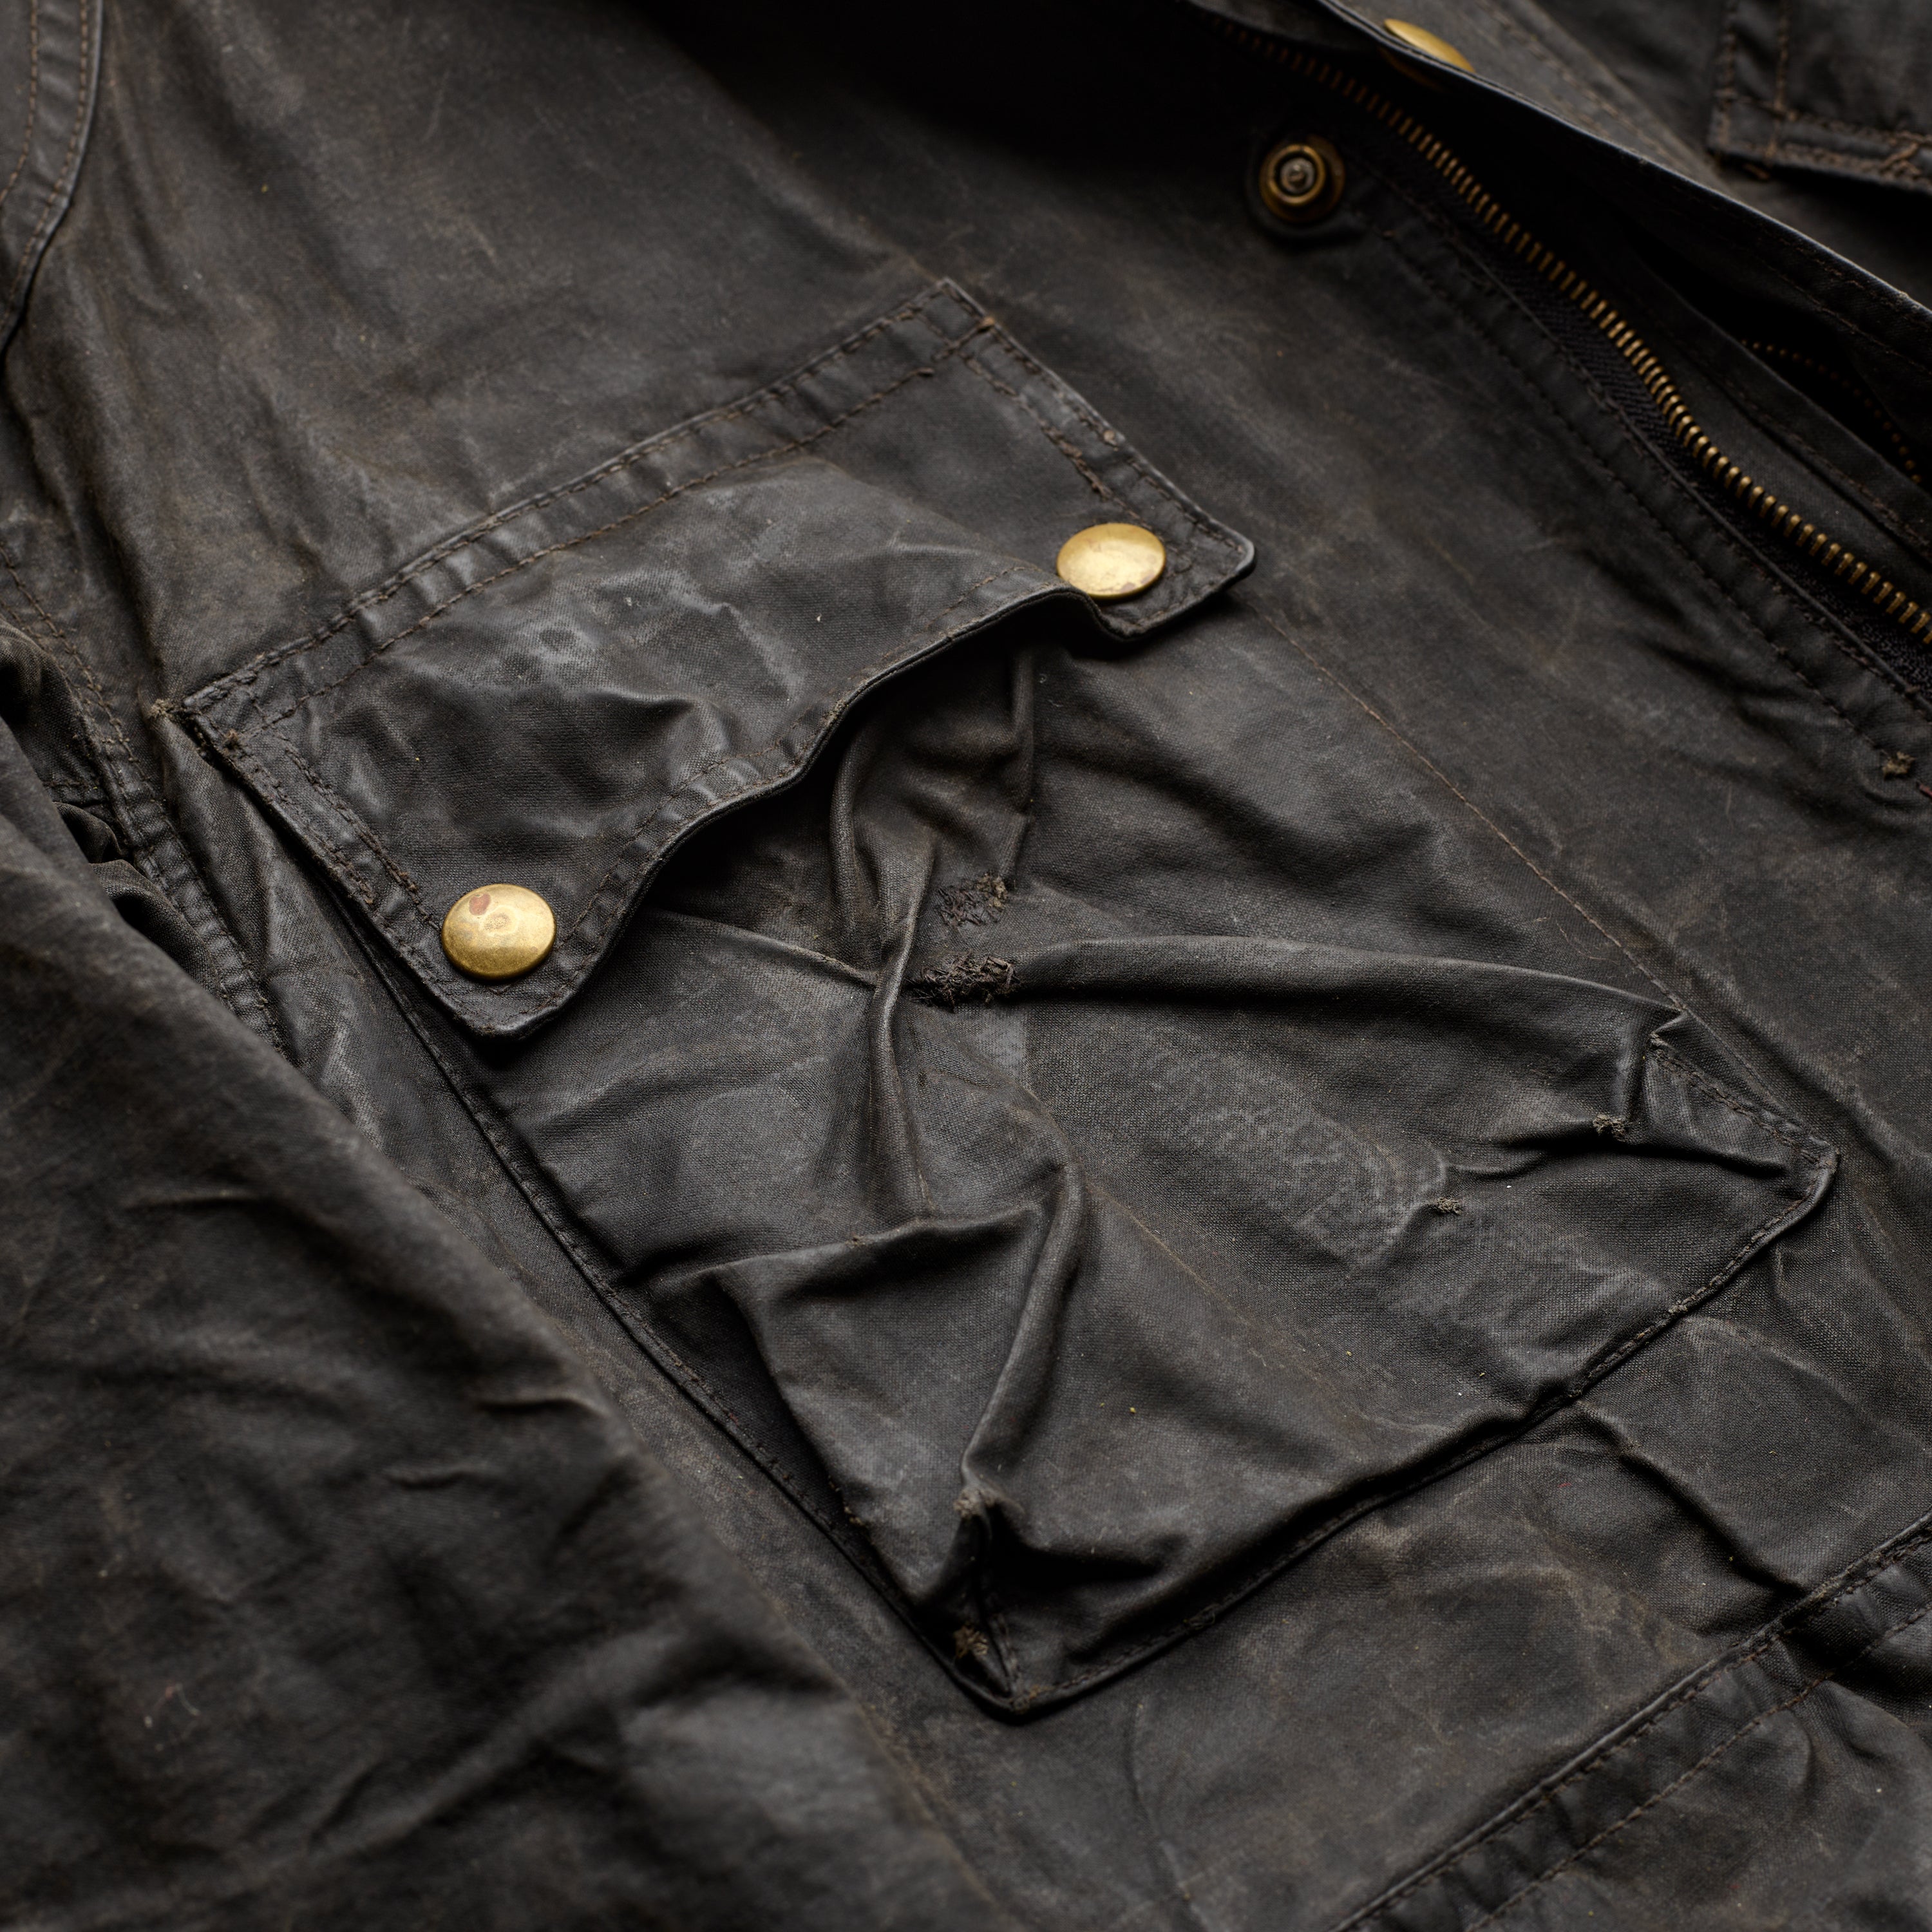 The Belstaff Vintage Belted Jacket